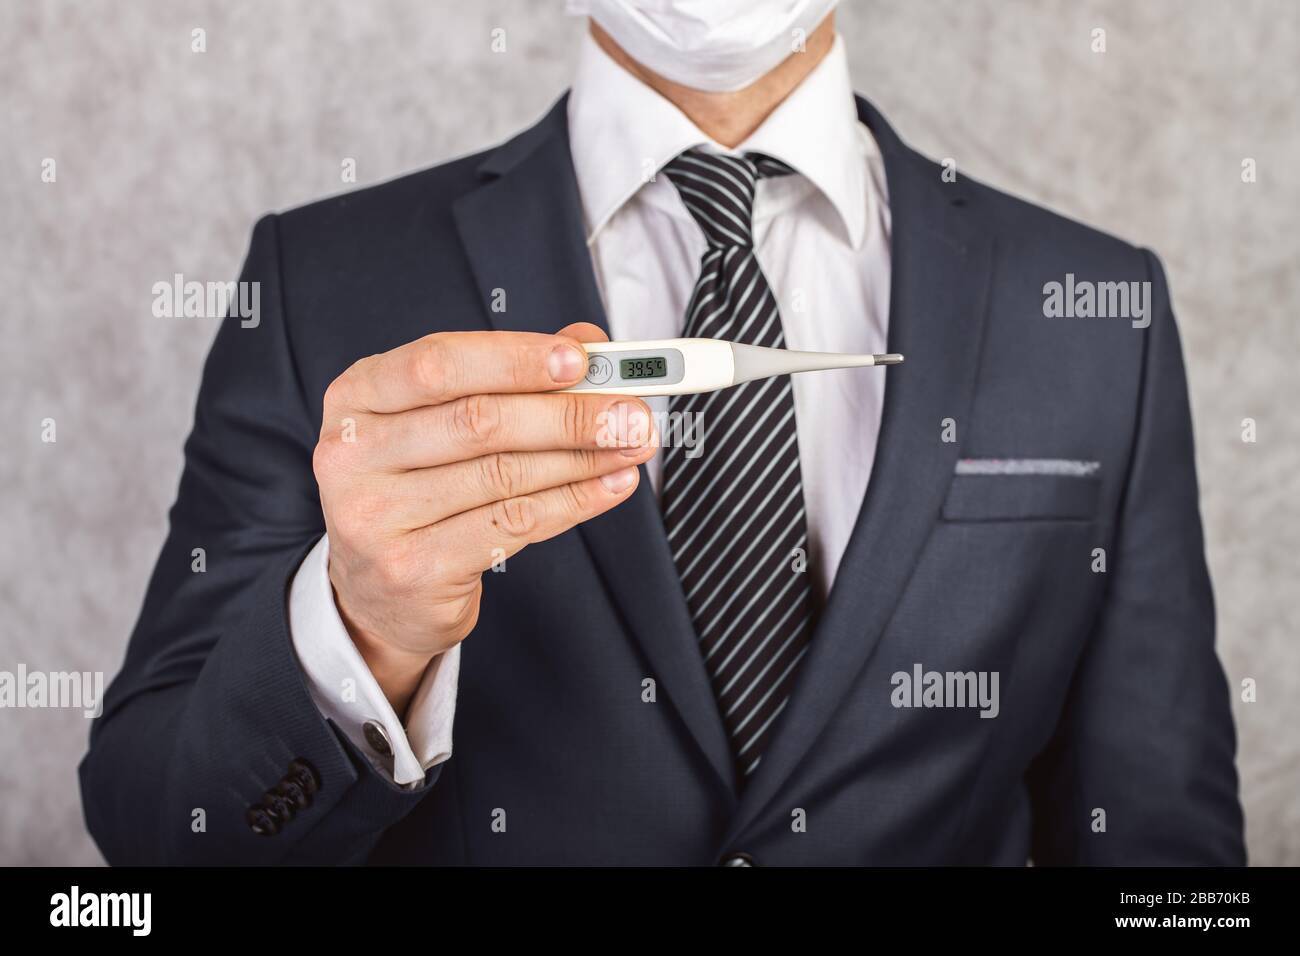 Un hombre en un traje y corbata sostiene en sus manos un termómetro electrónico con temperatura de 39.5 Foto de stock